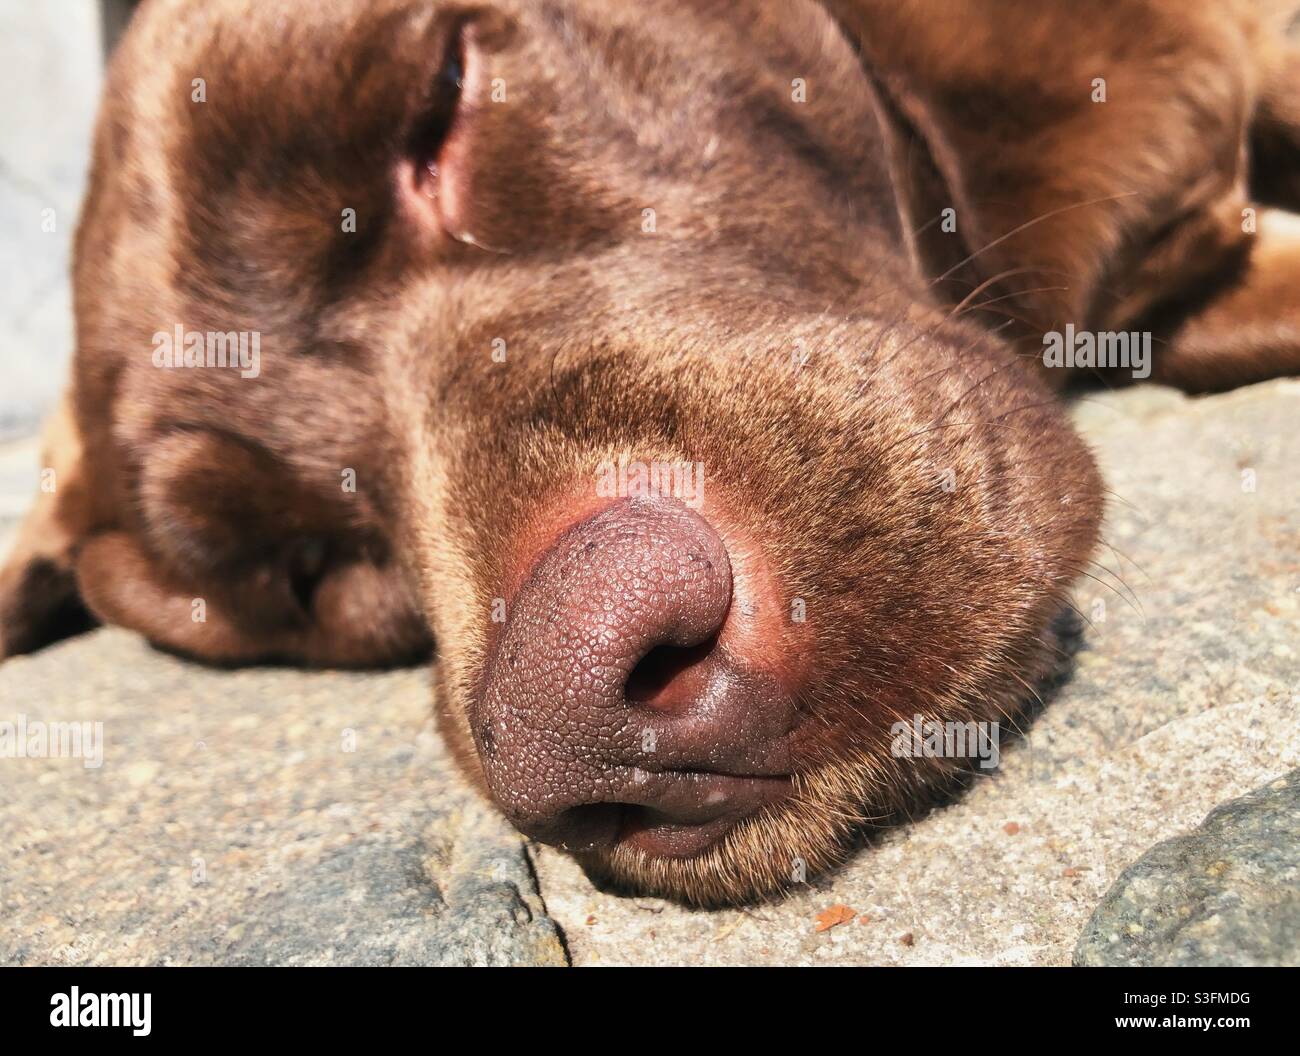 Nose of a Labrador dog Stock Photo